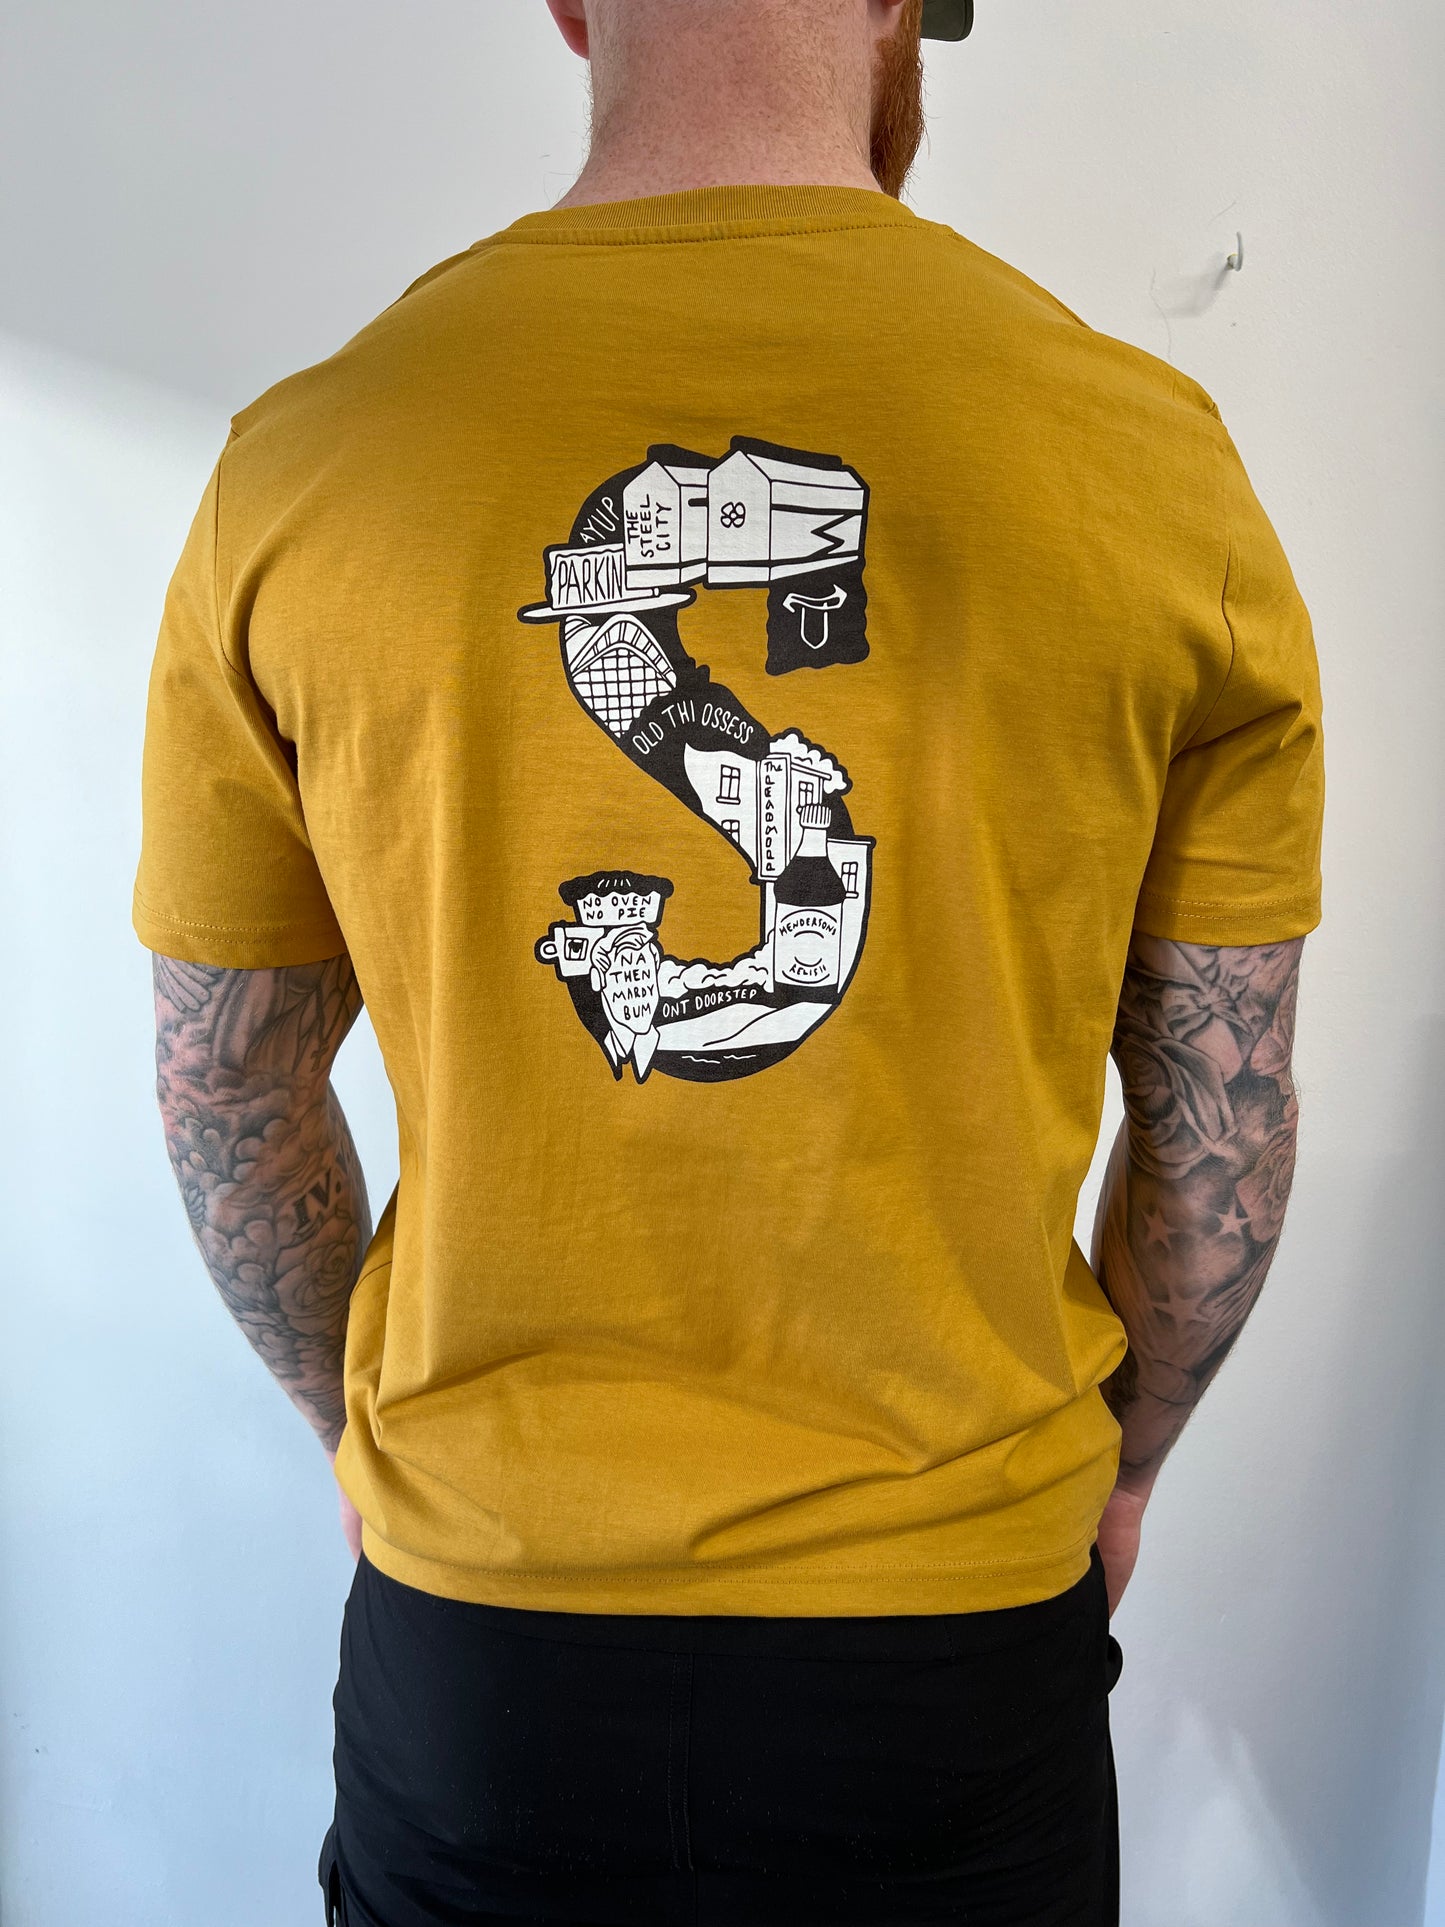 S is for Sheffield - Sheffield Art Unisex T-Shirt - Luke Horton